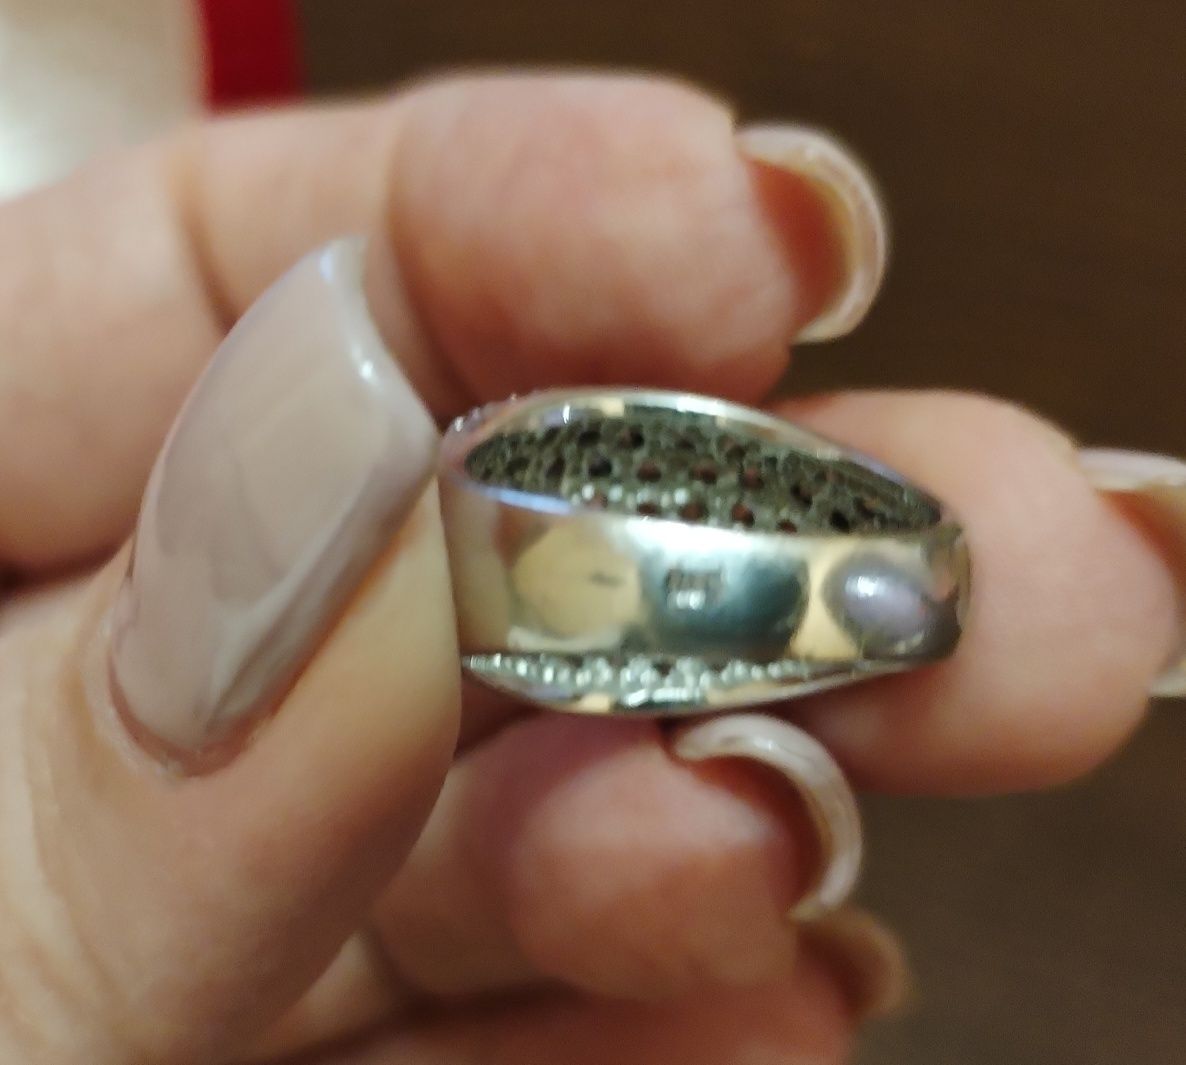 Нов сребърен пръстен